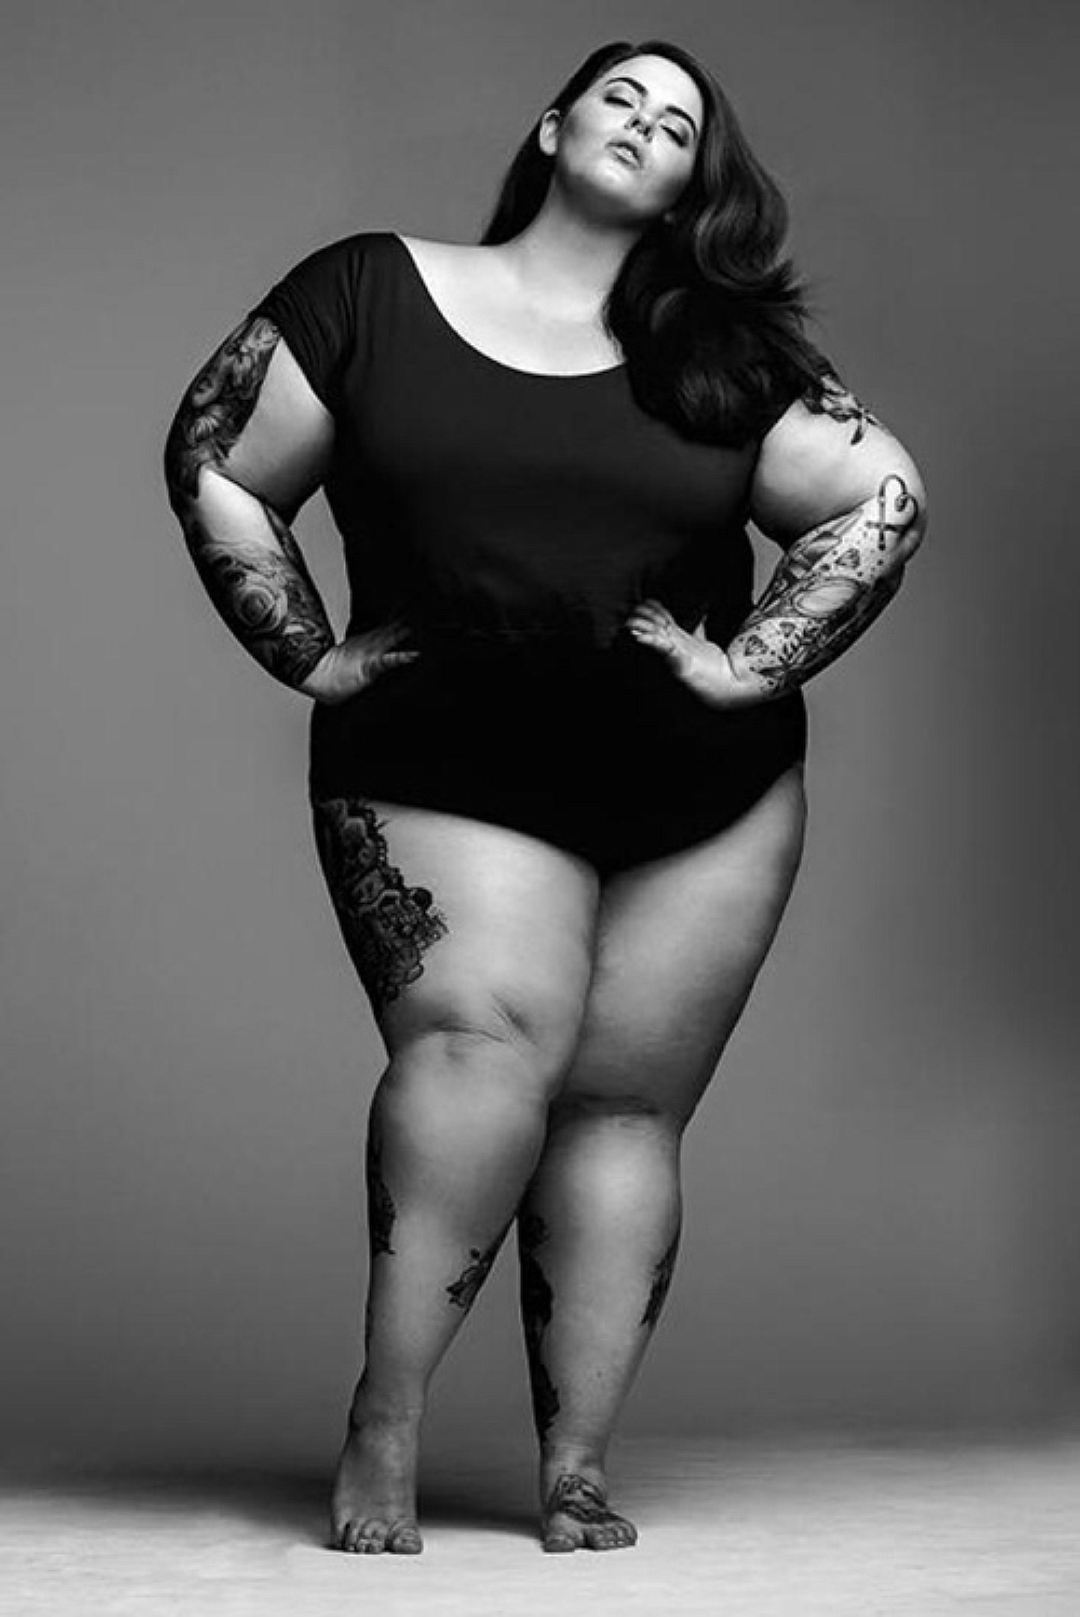 Честная исповедь женщины, далекой от современных стандартов красоты:"Да, я толстая, и что?"